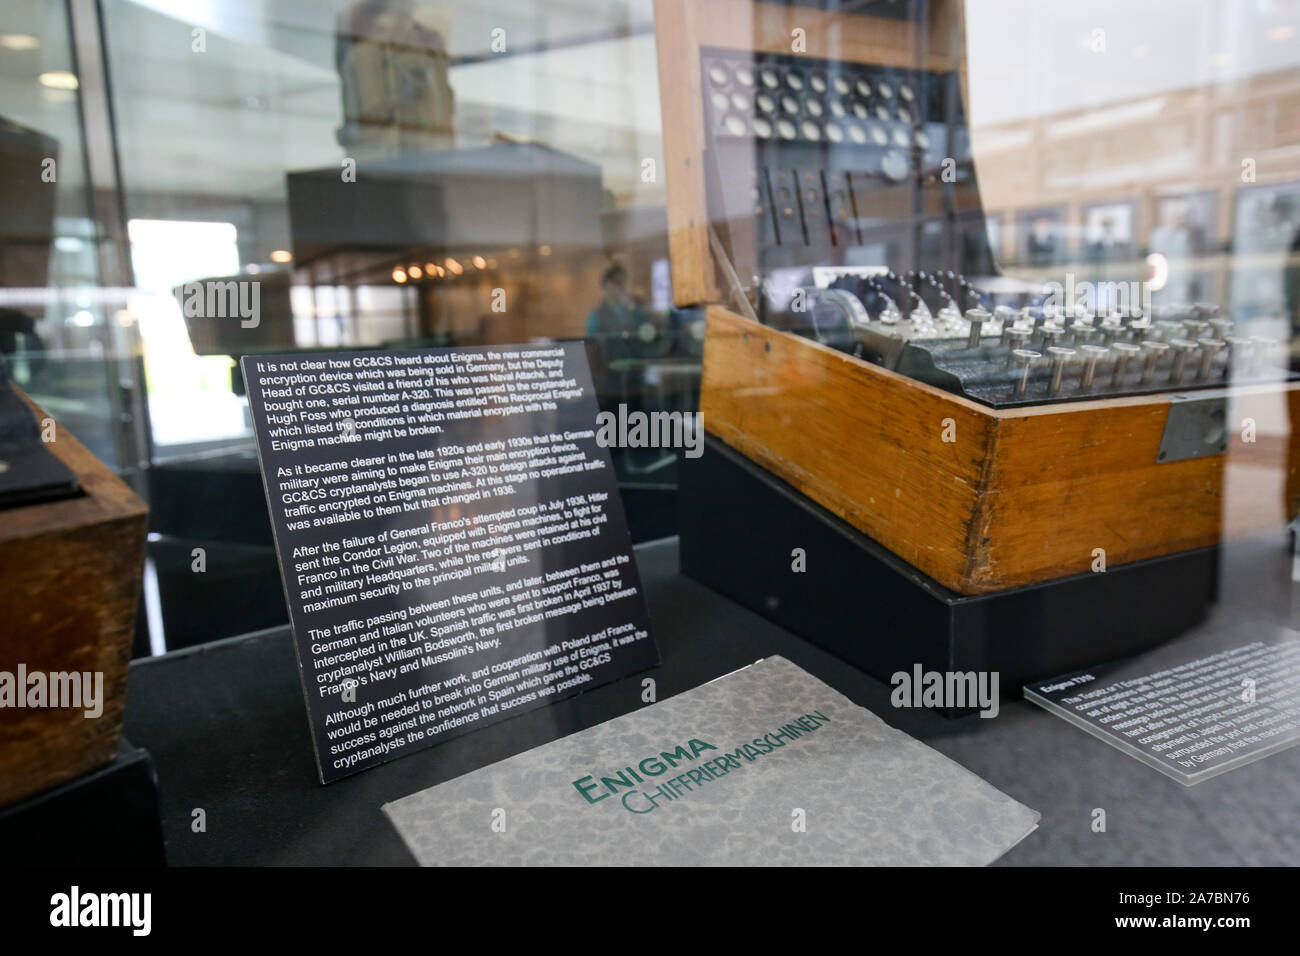 Ein Enigma Maschine auf Show in Government Communications Headquarters, die gemeinhin als GCHQ, die Intelligenz und Sicherheit Organisation für die Bereitstellung von Signalen Intelligenz und Informationen der Regierung und der Streitkräfte des Vereinigten Königreichs, in Cheltenham zuständig. Stockfoto